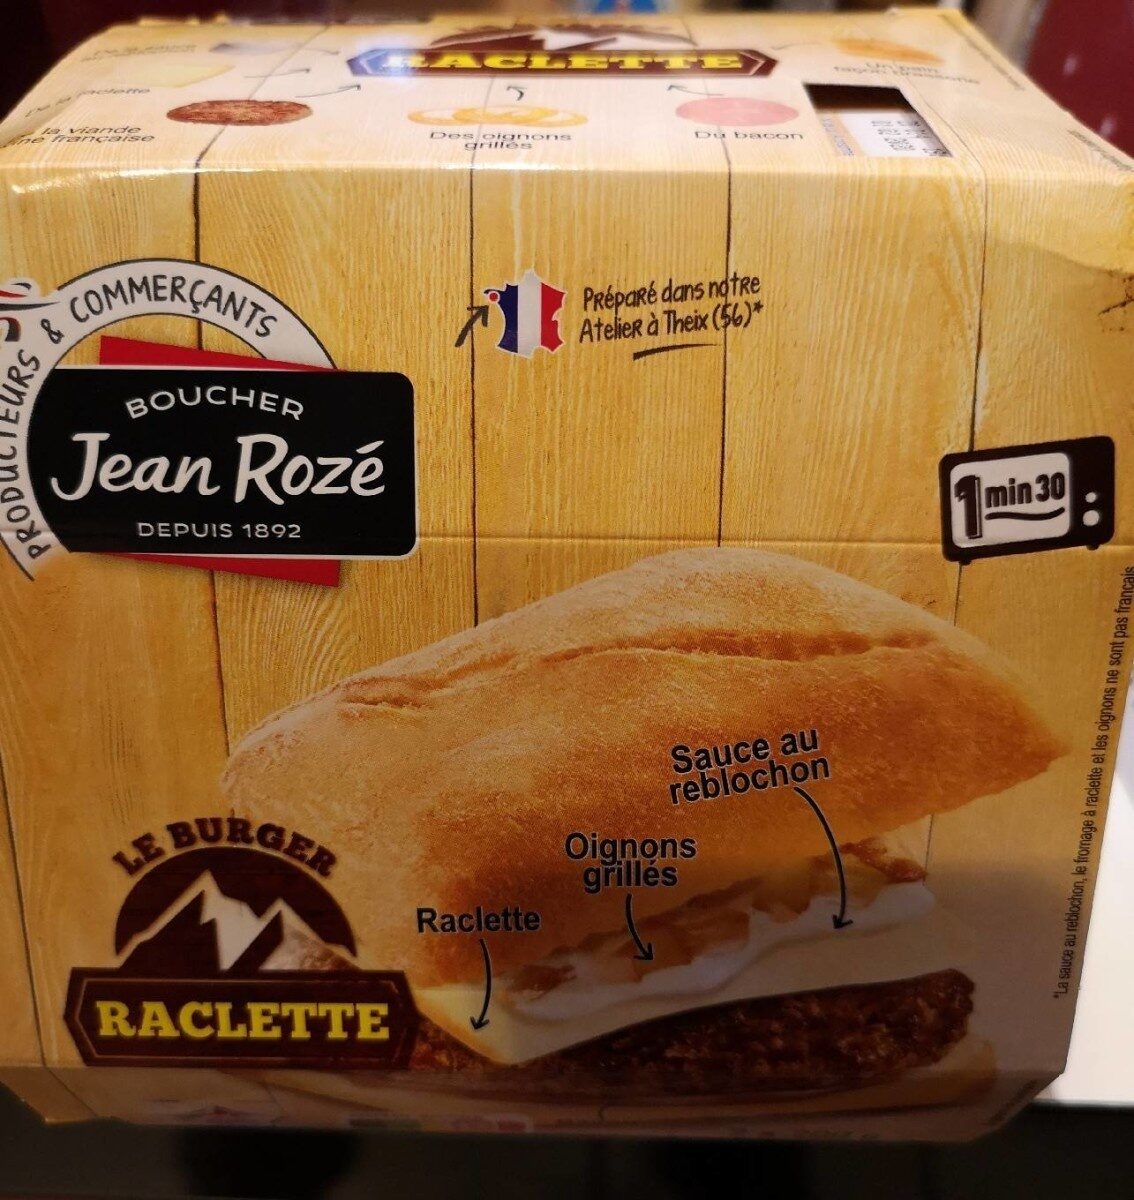 Le burger raclette - Product - fr